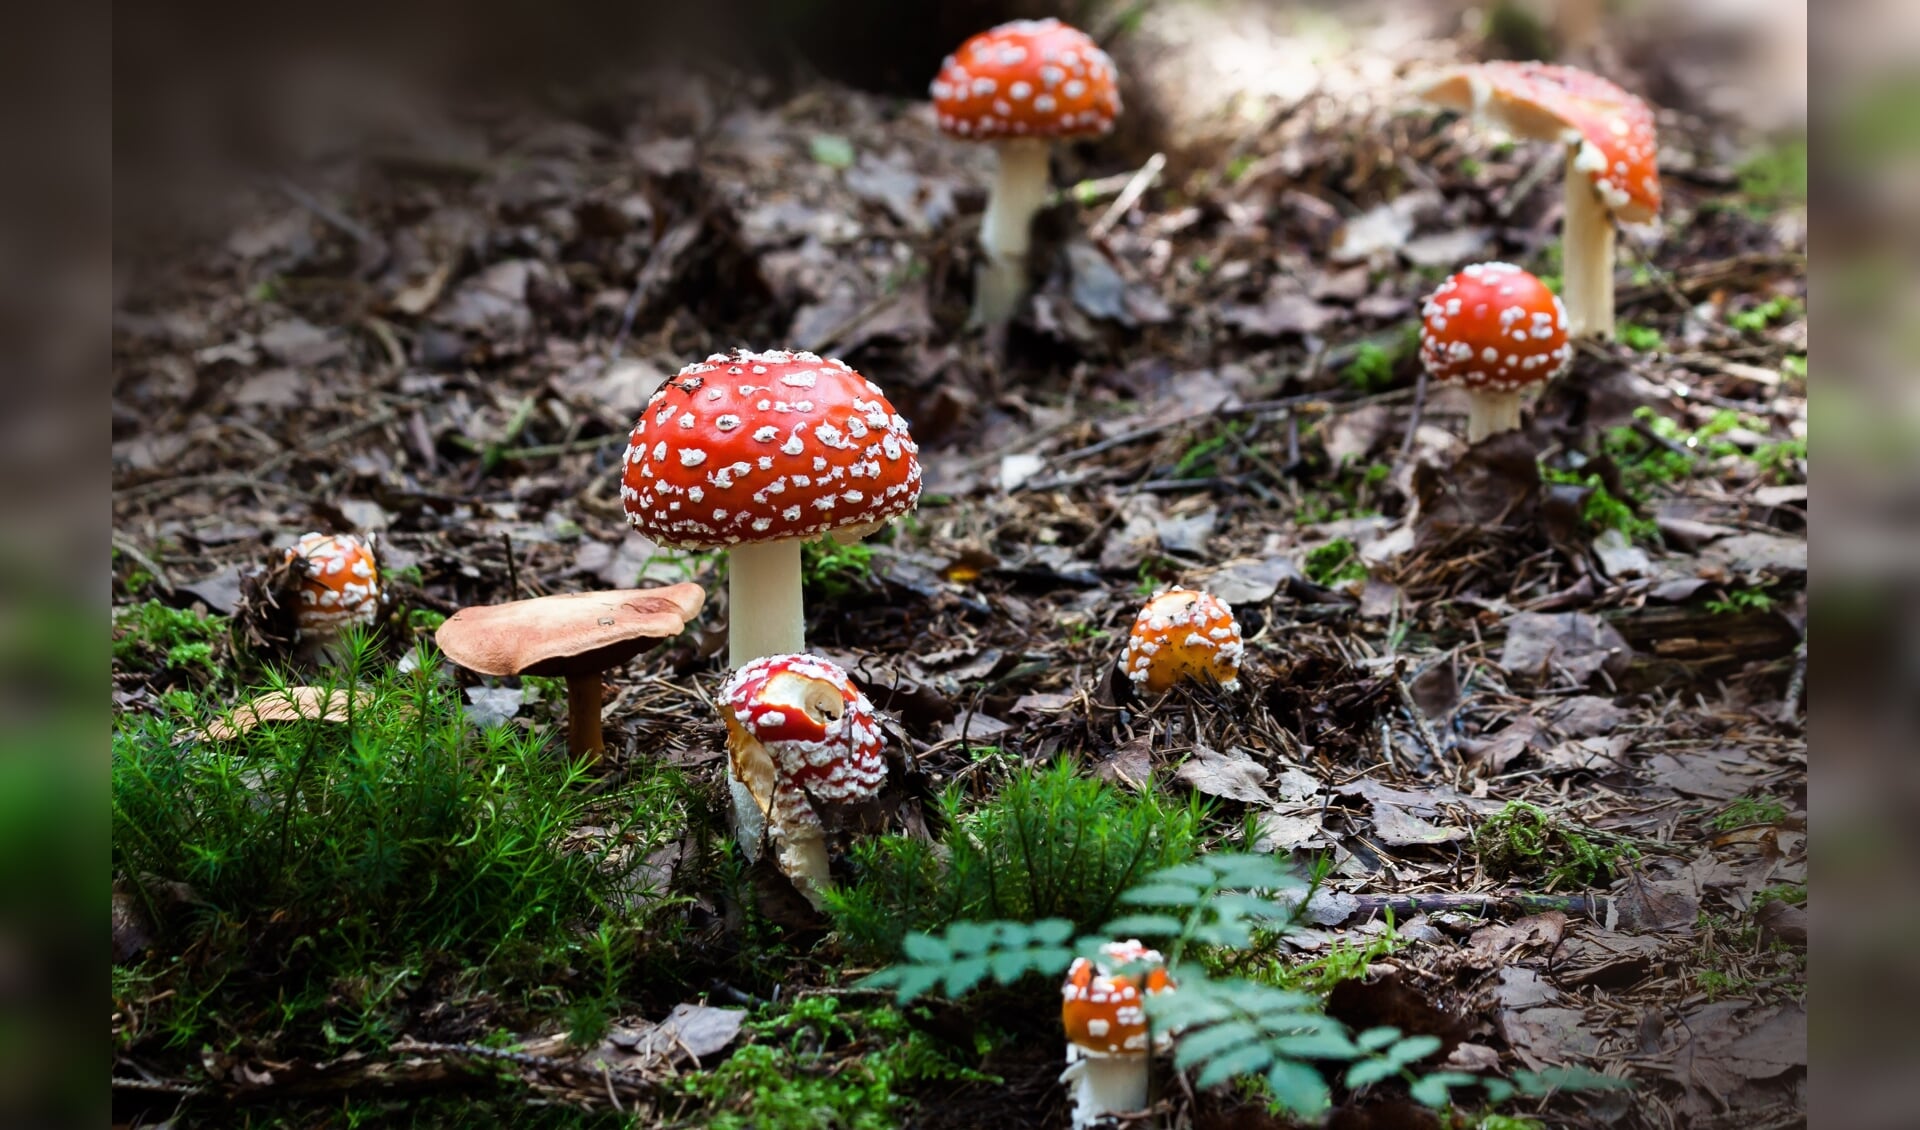 Bij paddenstoelen denken de meeste mensen meteen aan die van 'rood met witte stippen'. Deze draagt de toch minder leuke naam vliegenzwam.